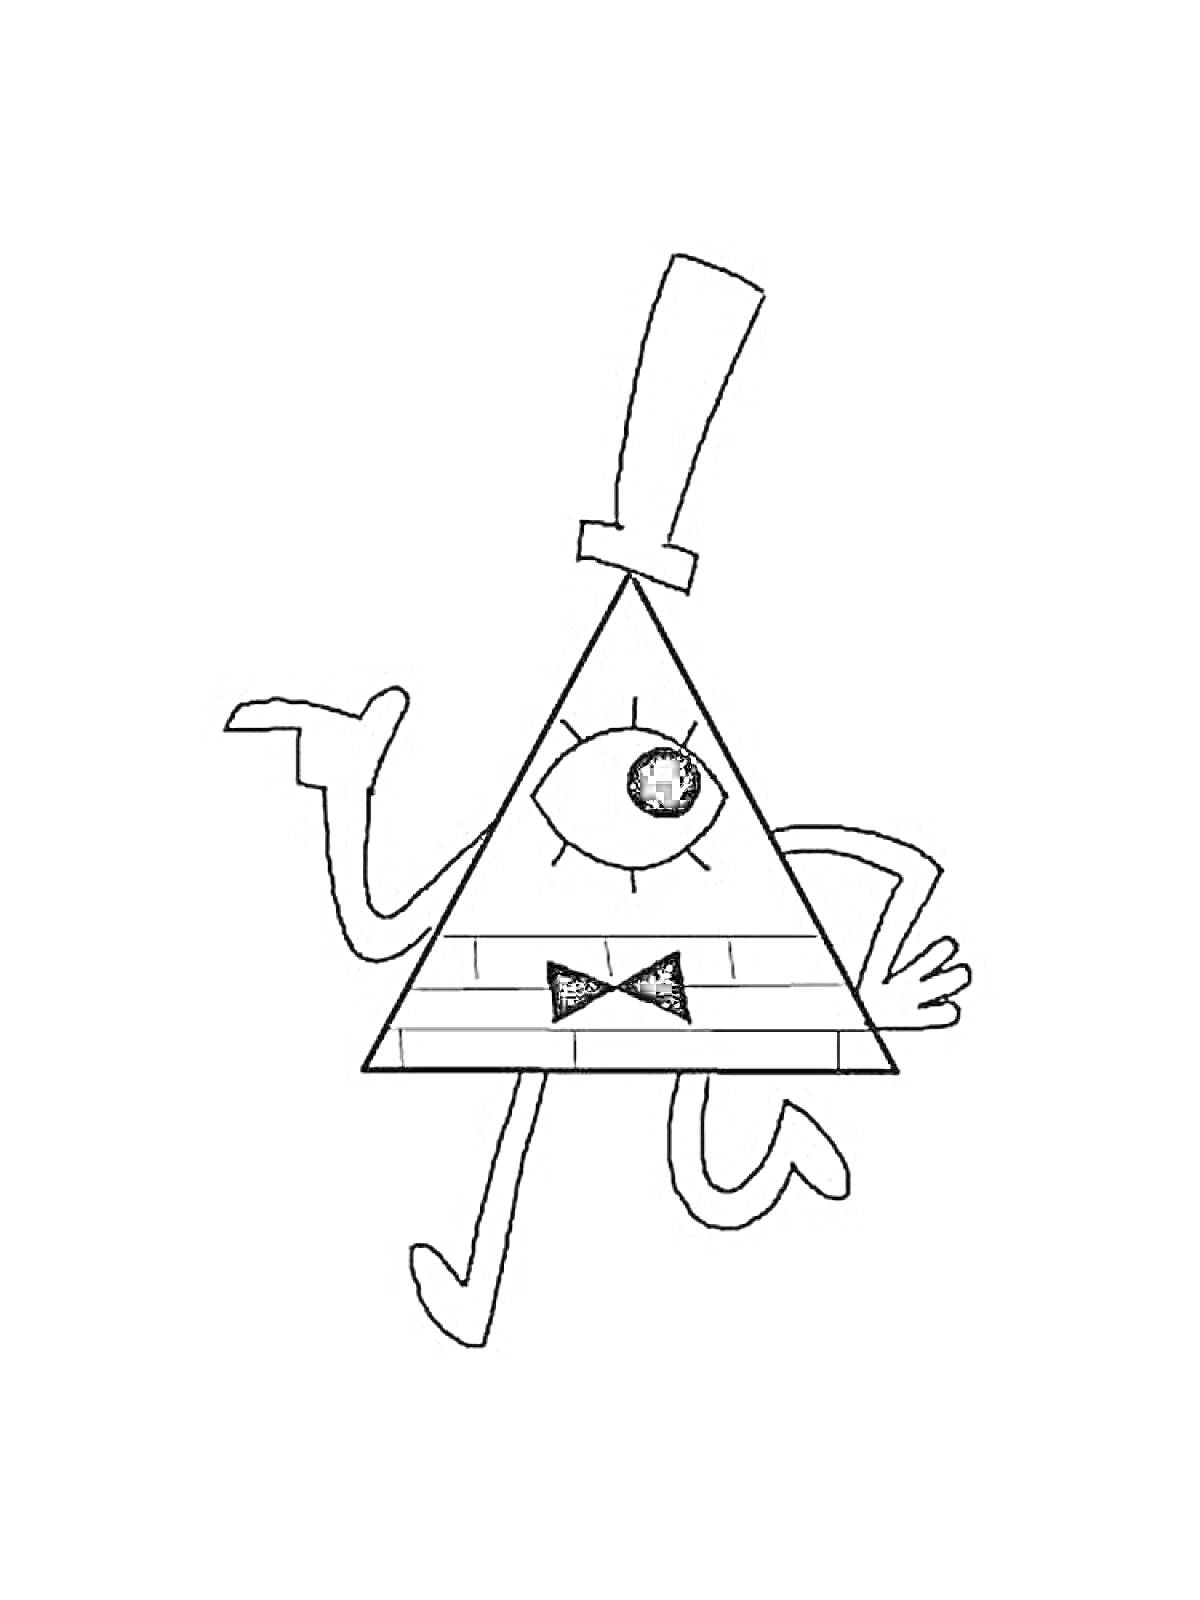 Билл Шифр с рукой поднятой вверх, держащий трость, одно большое глазо в центре треугольного тела, цилиндрическая шляпа и бабочка на уровне туловища